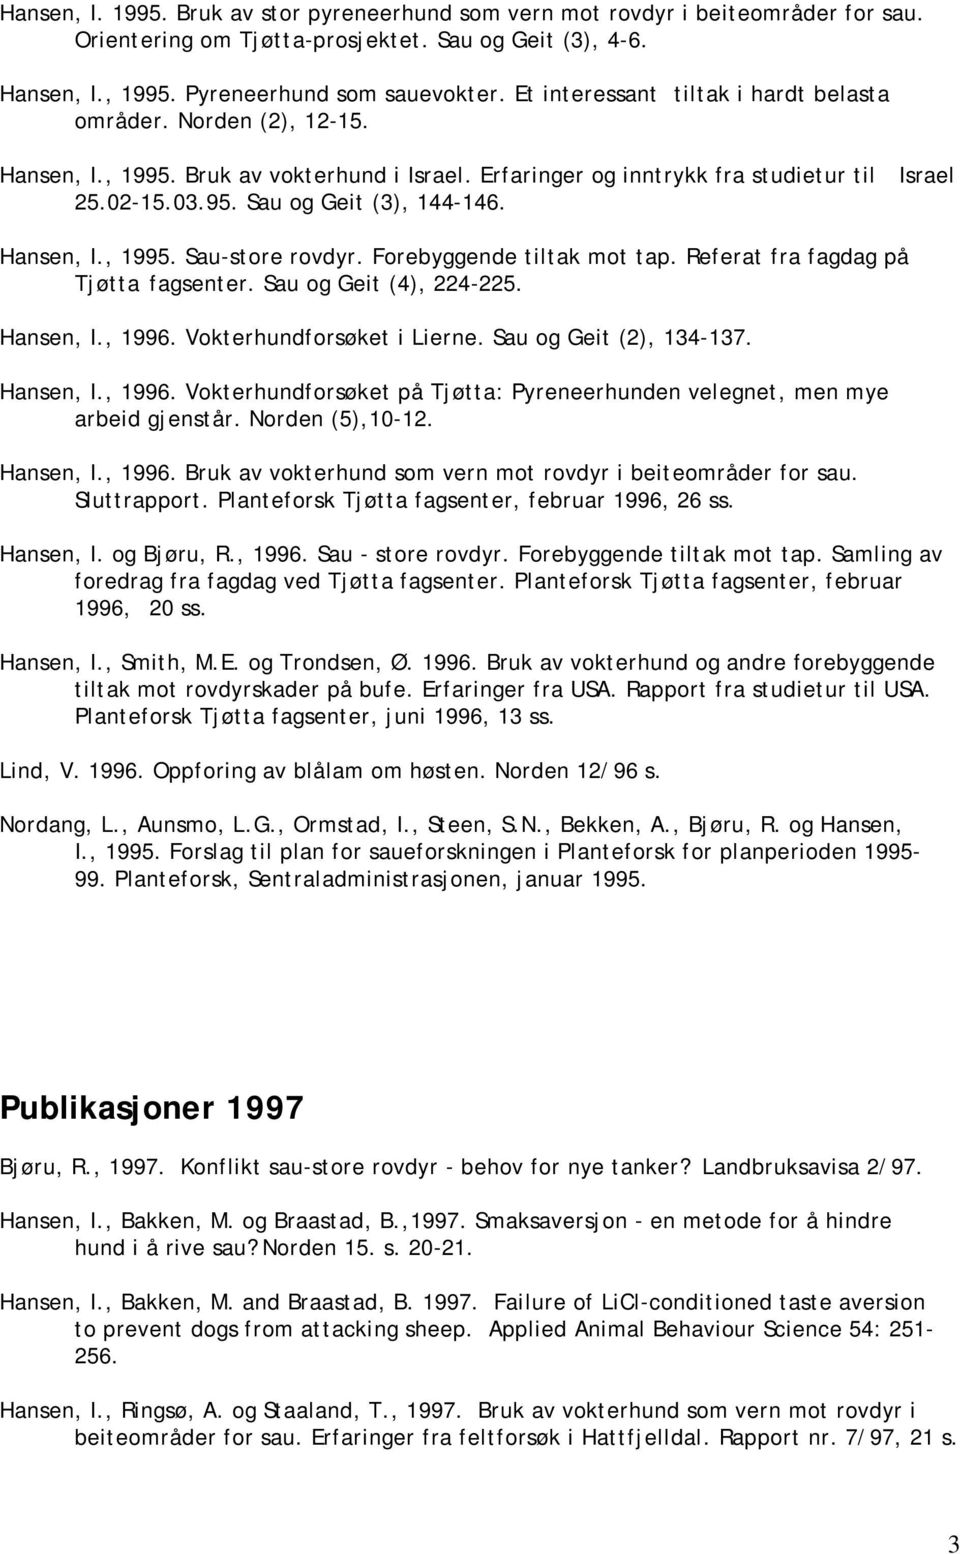 Hansen, I., 1995. Sau-store rovdyr. Forebyggende tiltak mot tap. Referat fra fagdag på Tjøtta fagsenter. Sau og Geit (4), 224-225. Hansen, I., 1996. Vokterhundforsøket i Lierne.